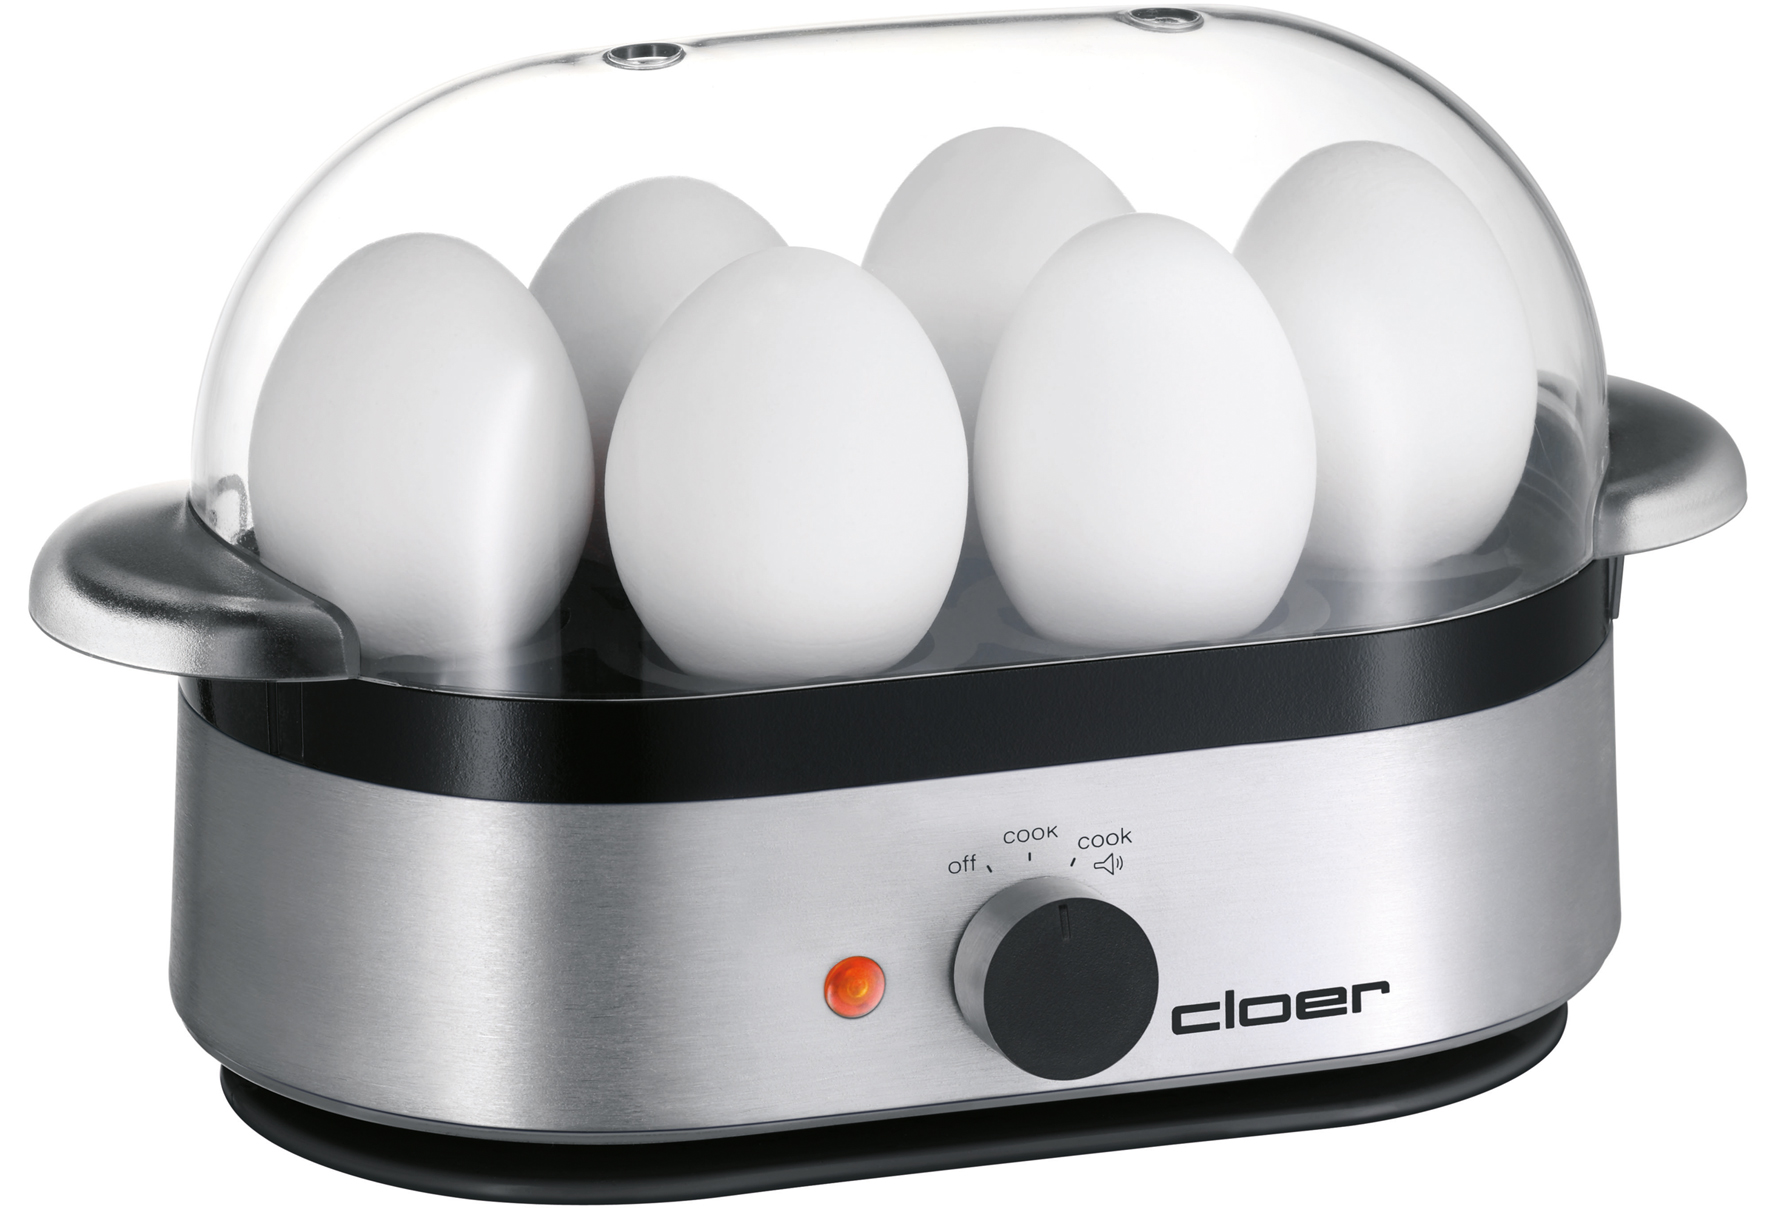 CLOER Eierkocher 6099 bis zu 6 Eier Alu matt